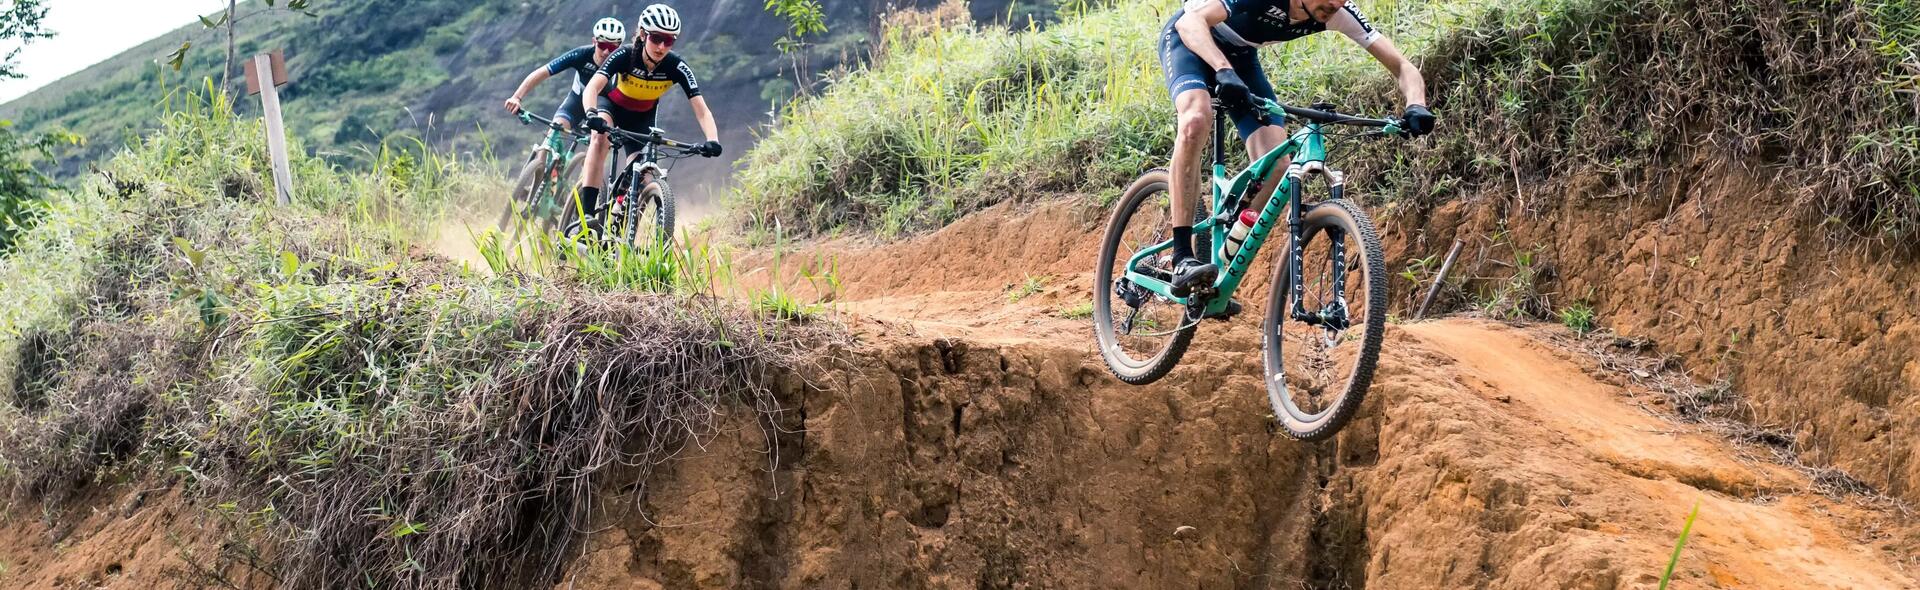 Wie meistert man eine steile Abfahrt mit dem Mountainbike?